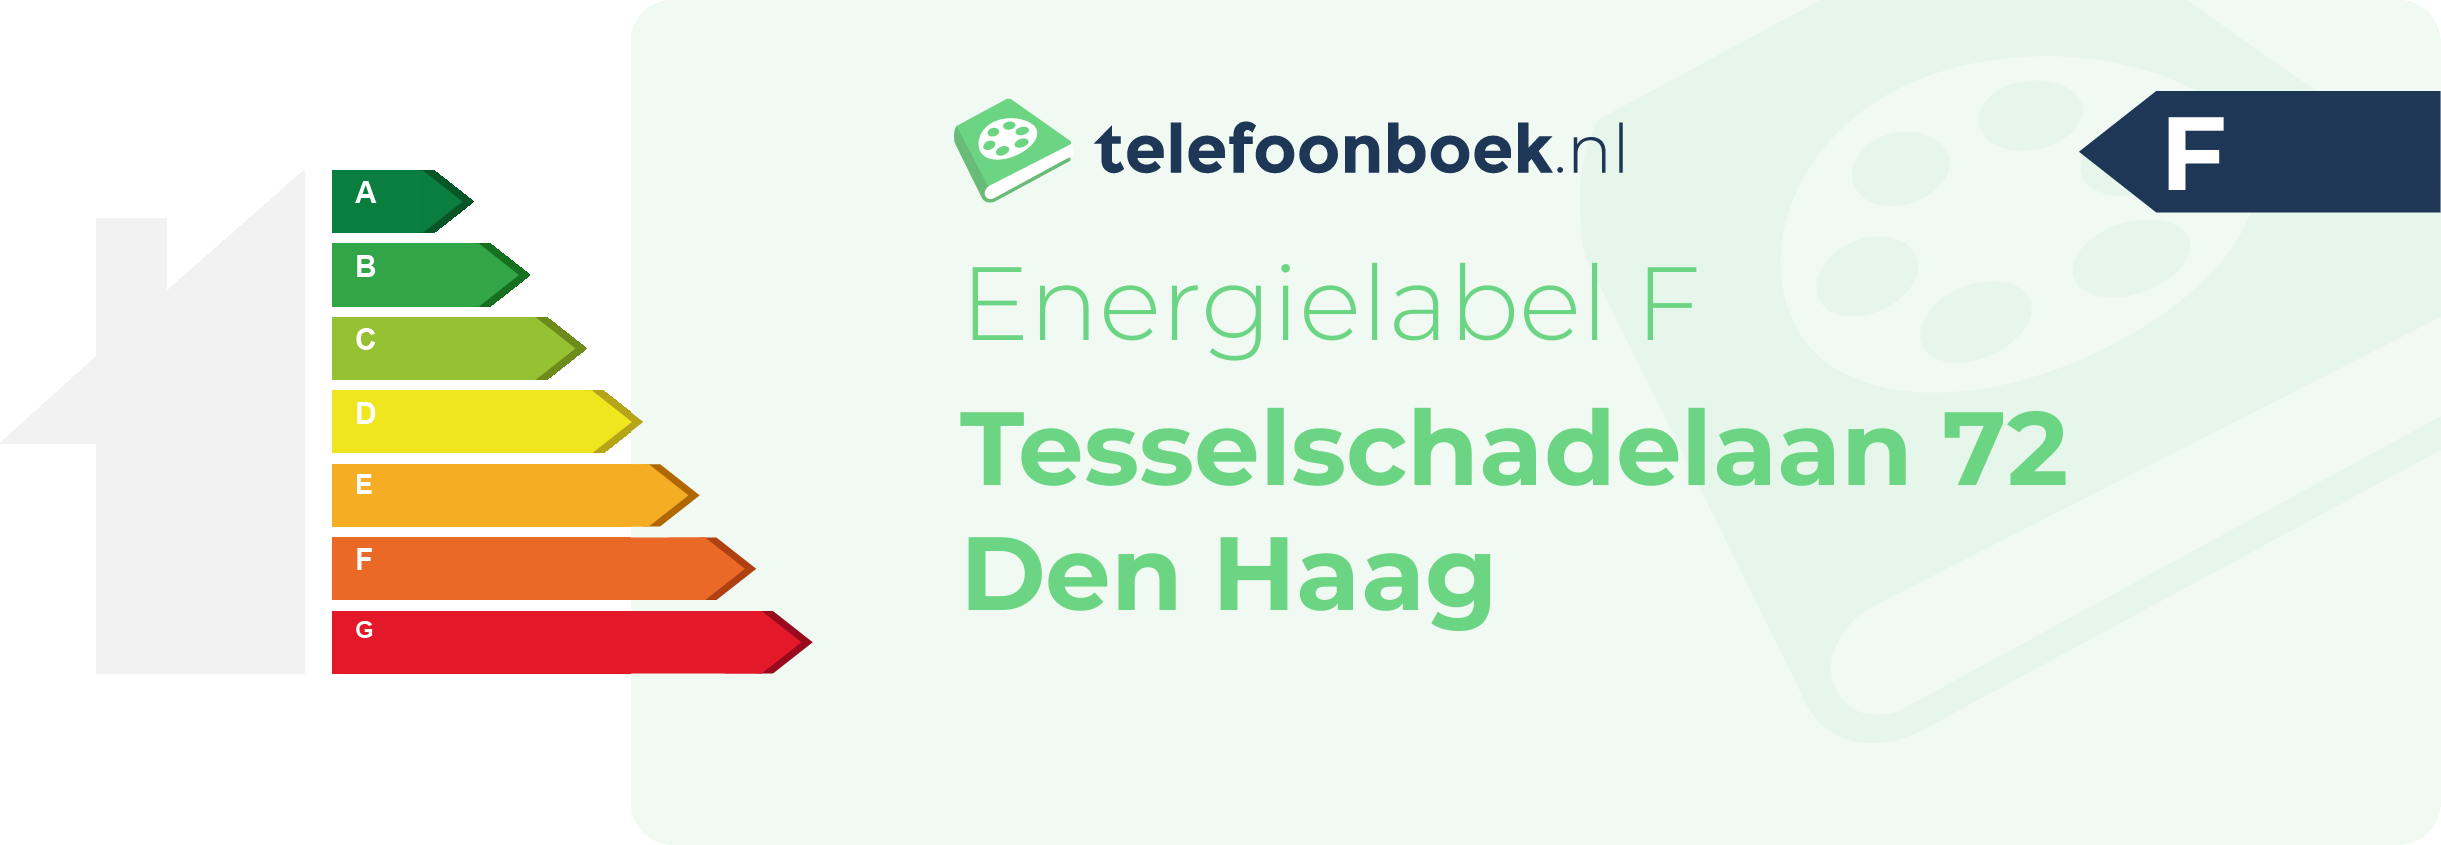 Energielabel Tesselschadelaan 72 Den Haag